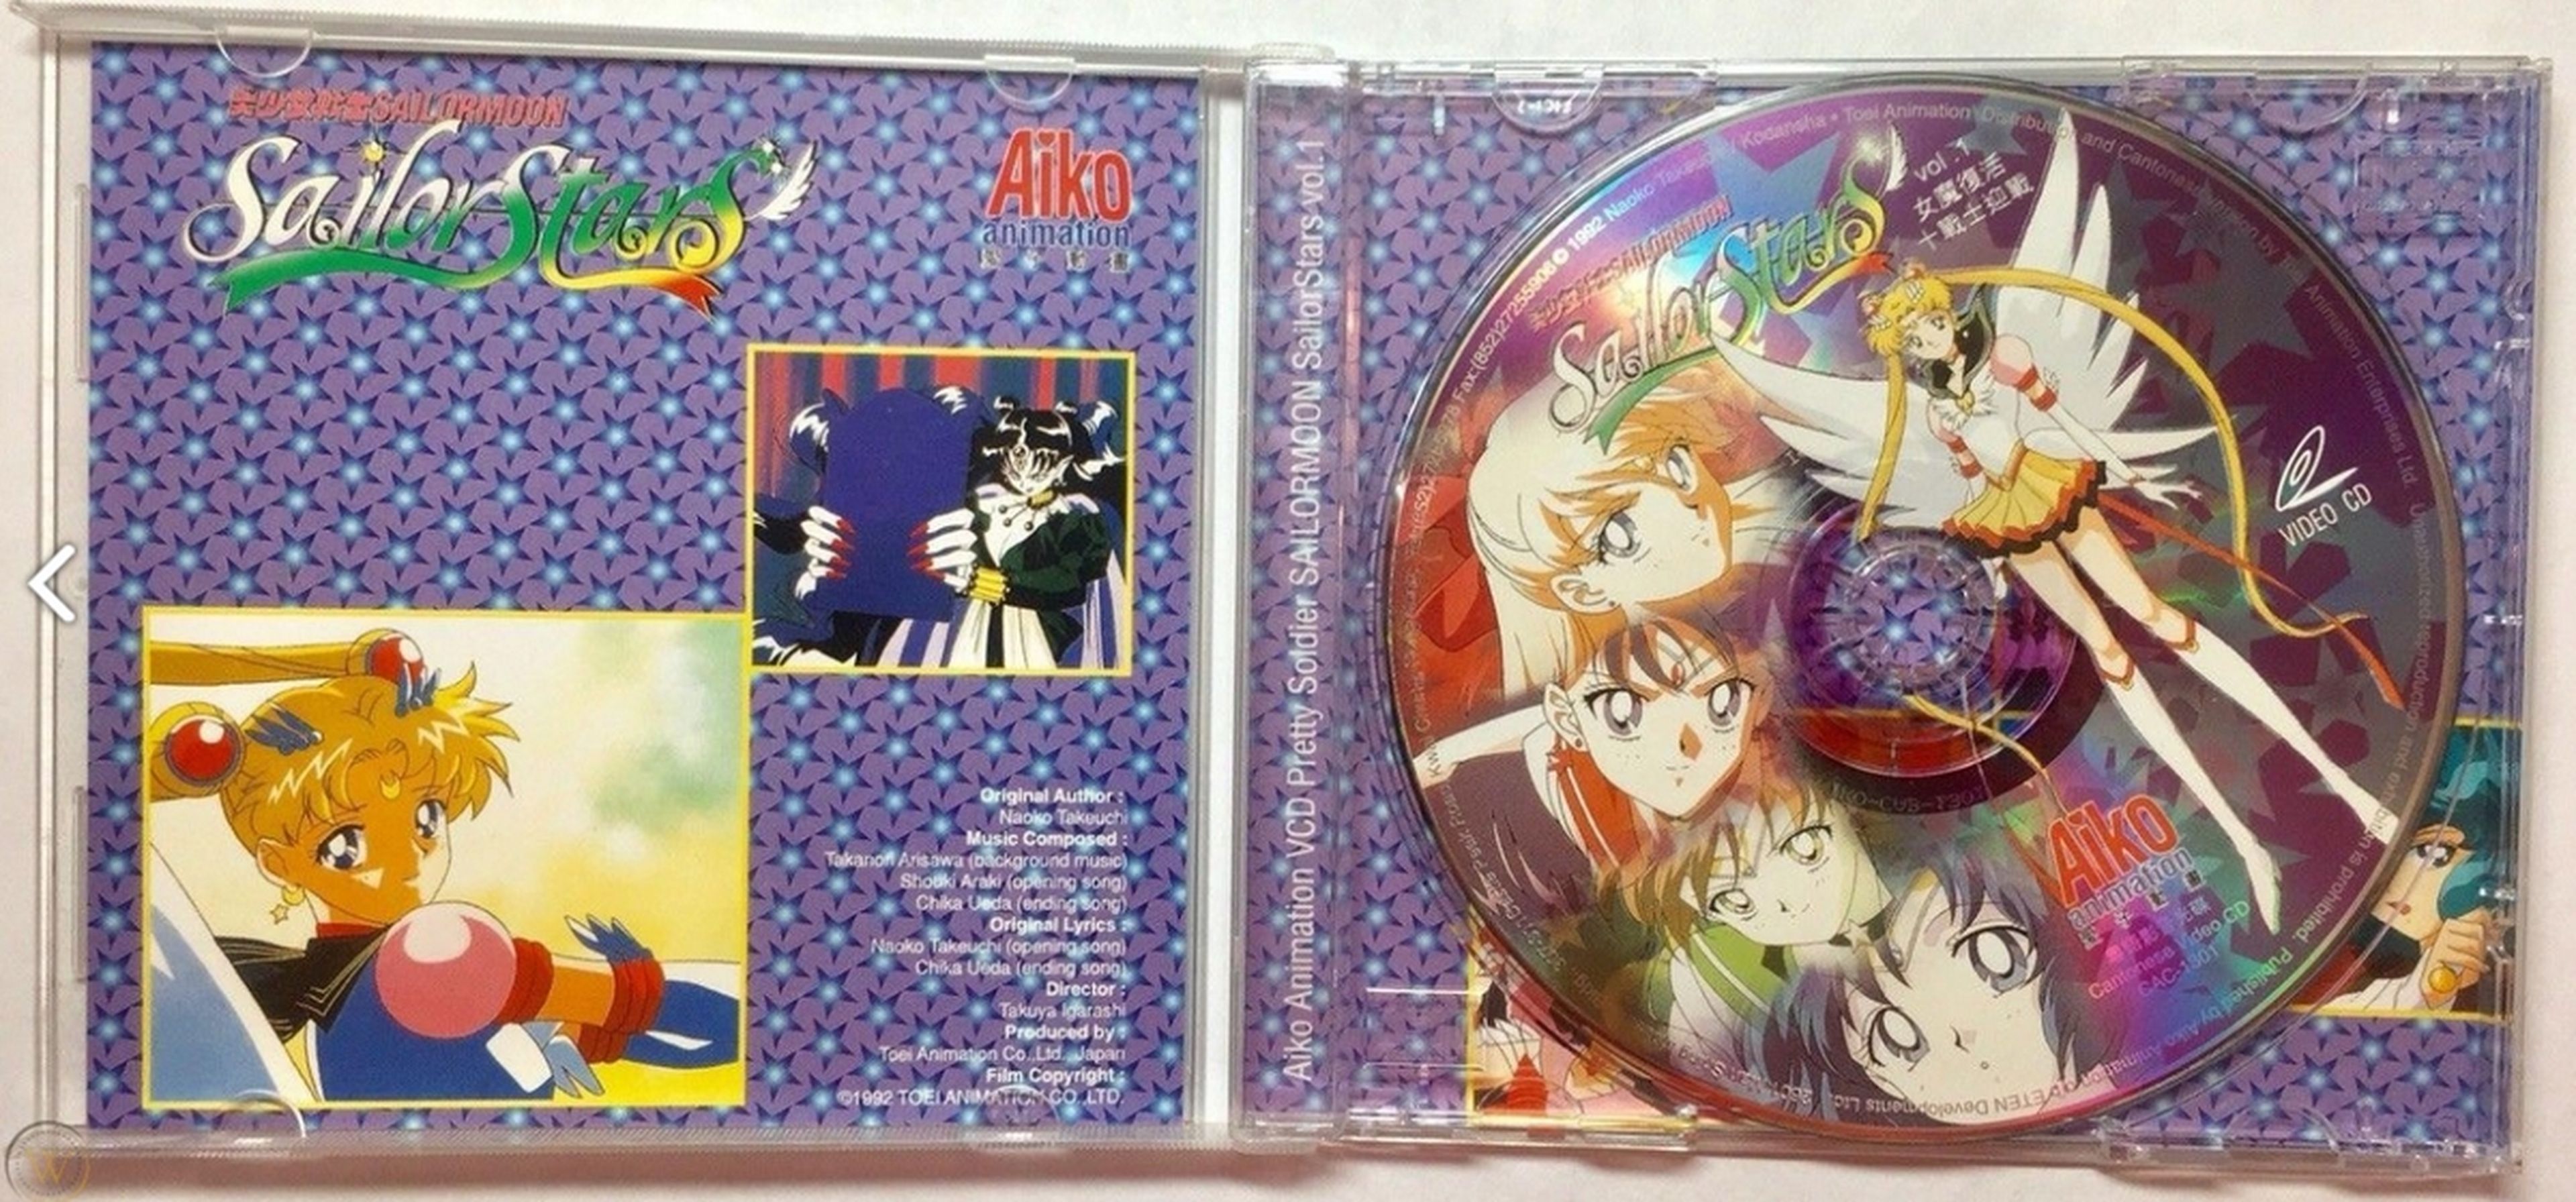 La historia del CD: desde aquel primer disco que lanzó Abba en 1982 hasta las cifras residuales de hoy en día